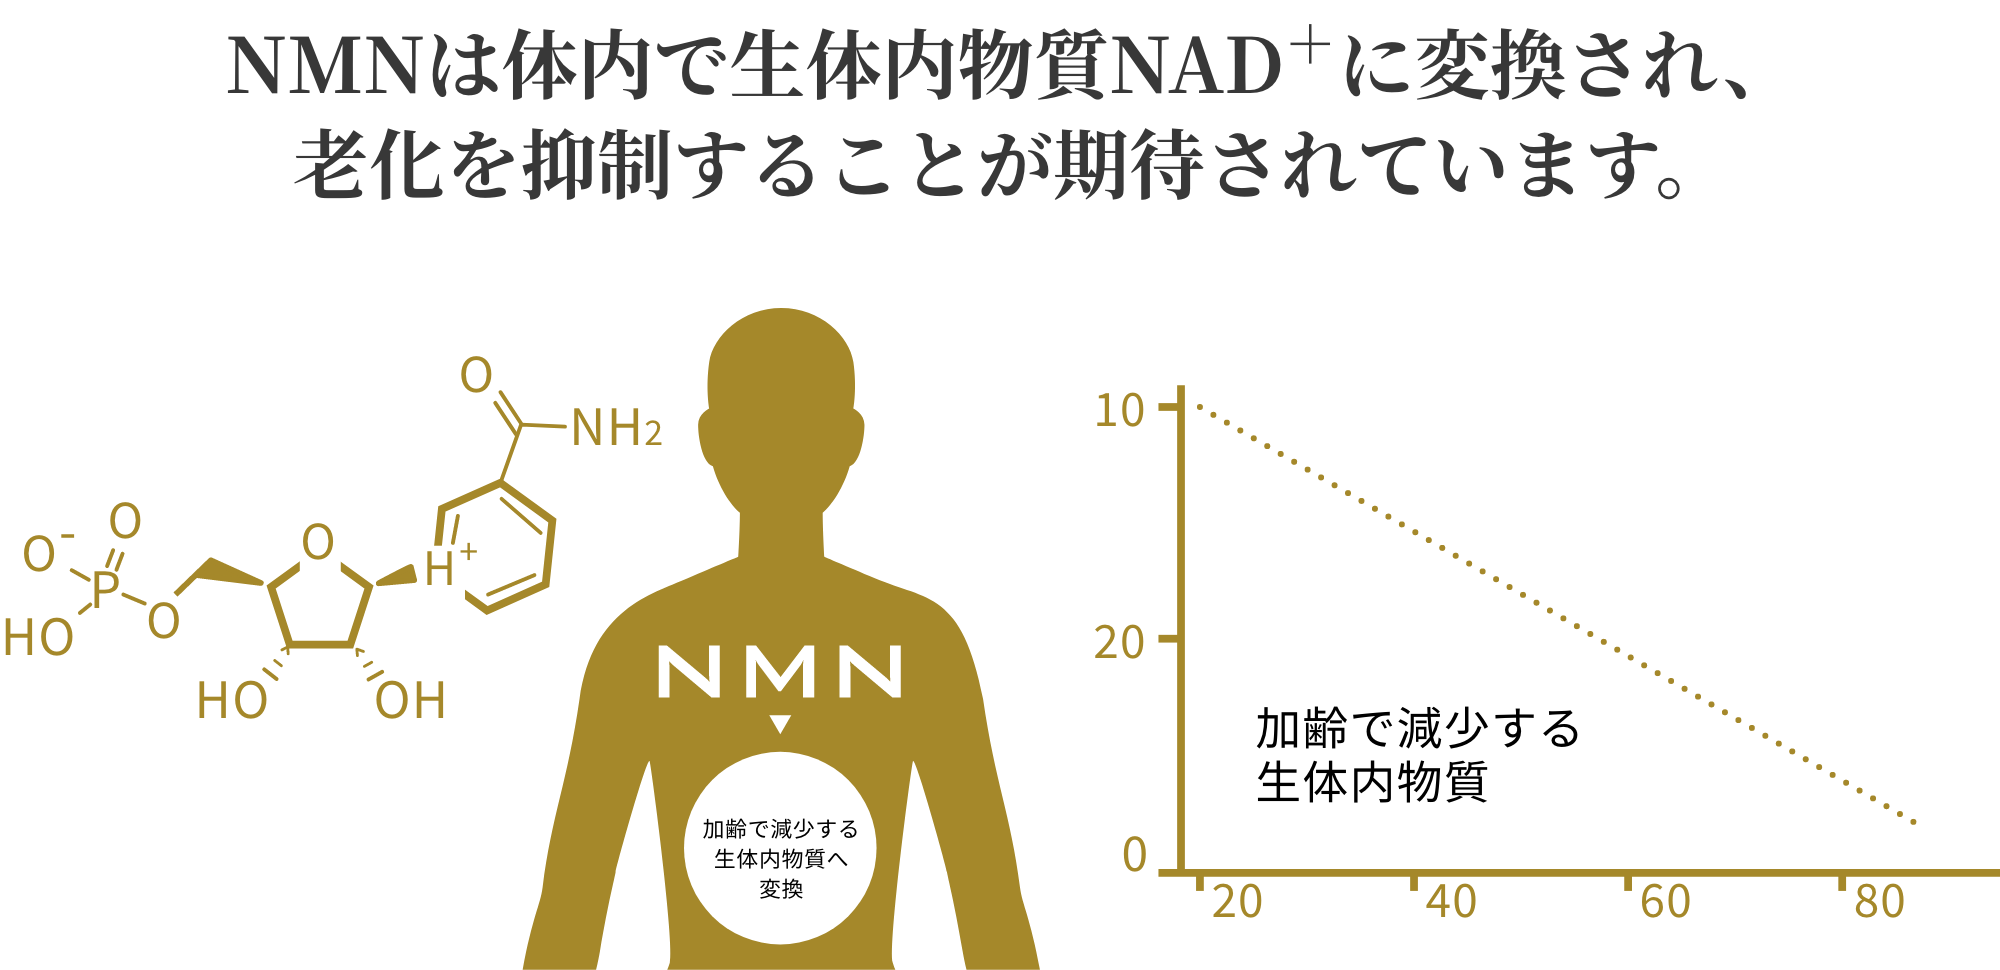 NMNは体内で生体内物質NAD+に変換され、老化を抑制することが期待されています。加齢で減少する生体内物質